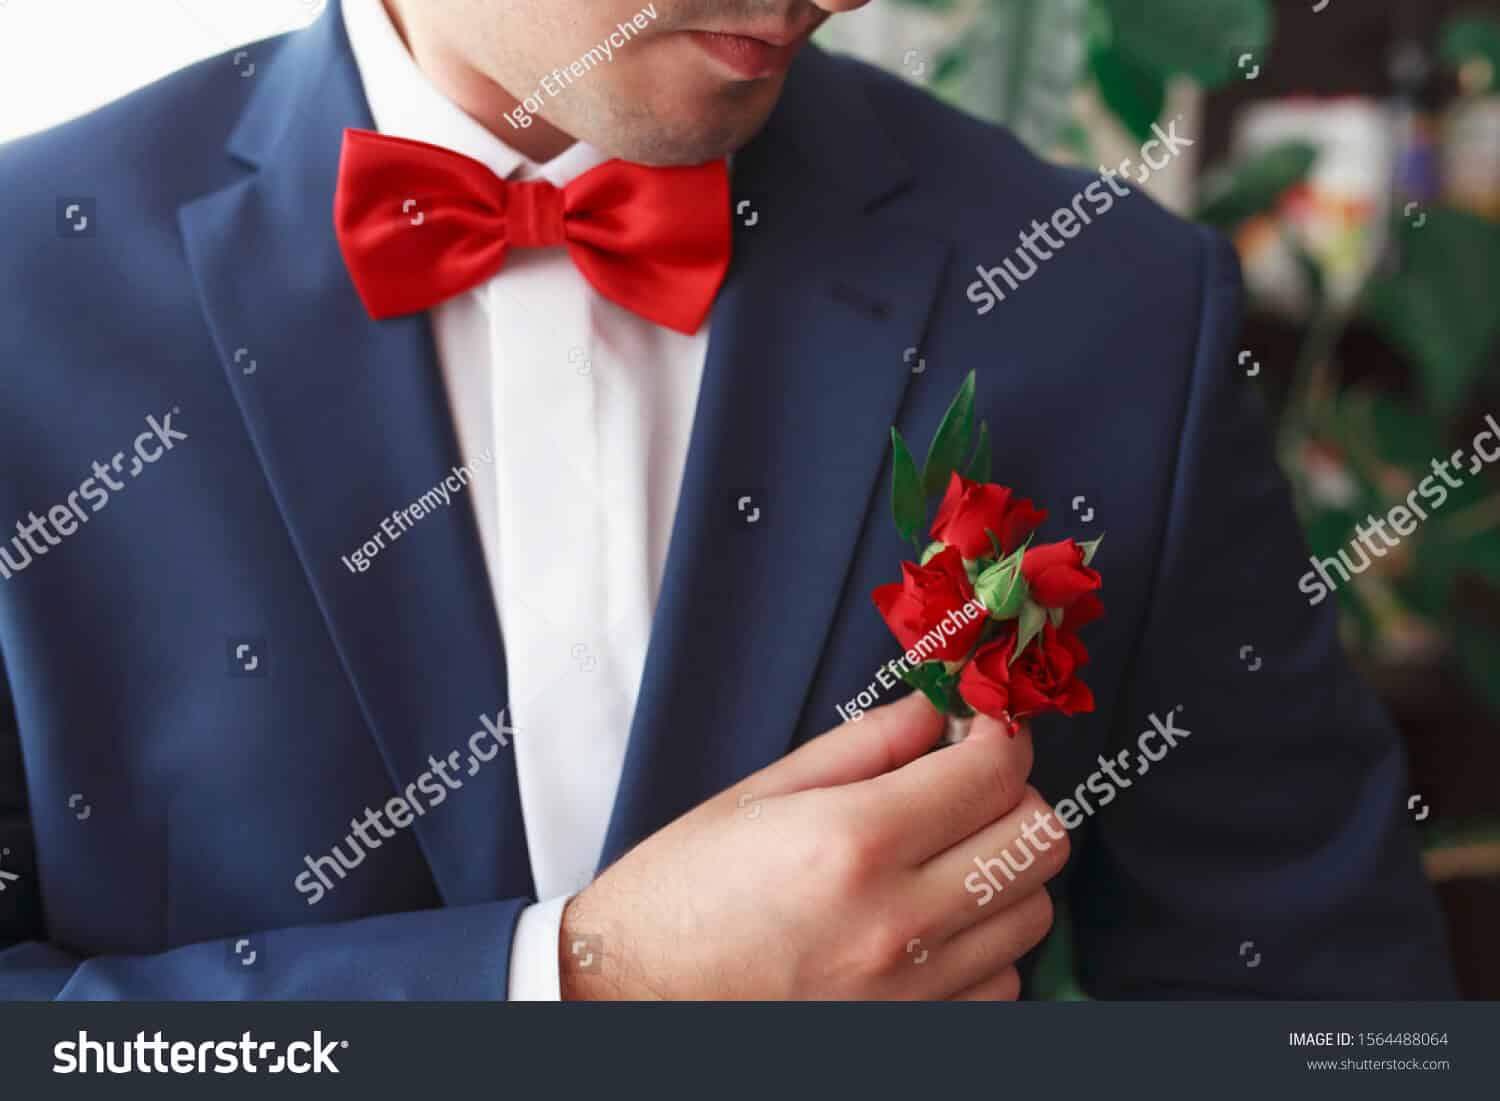 100 ngàn hình ảnh người đàn ông và hoa hồng trong ngày lễ Valentine